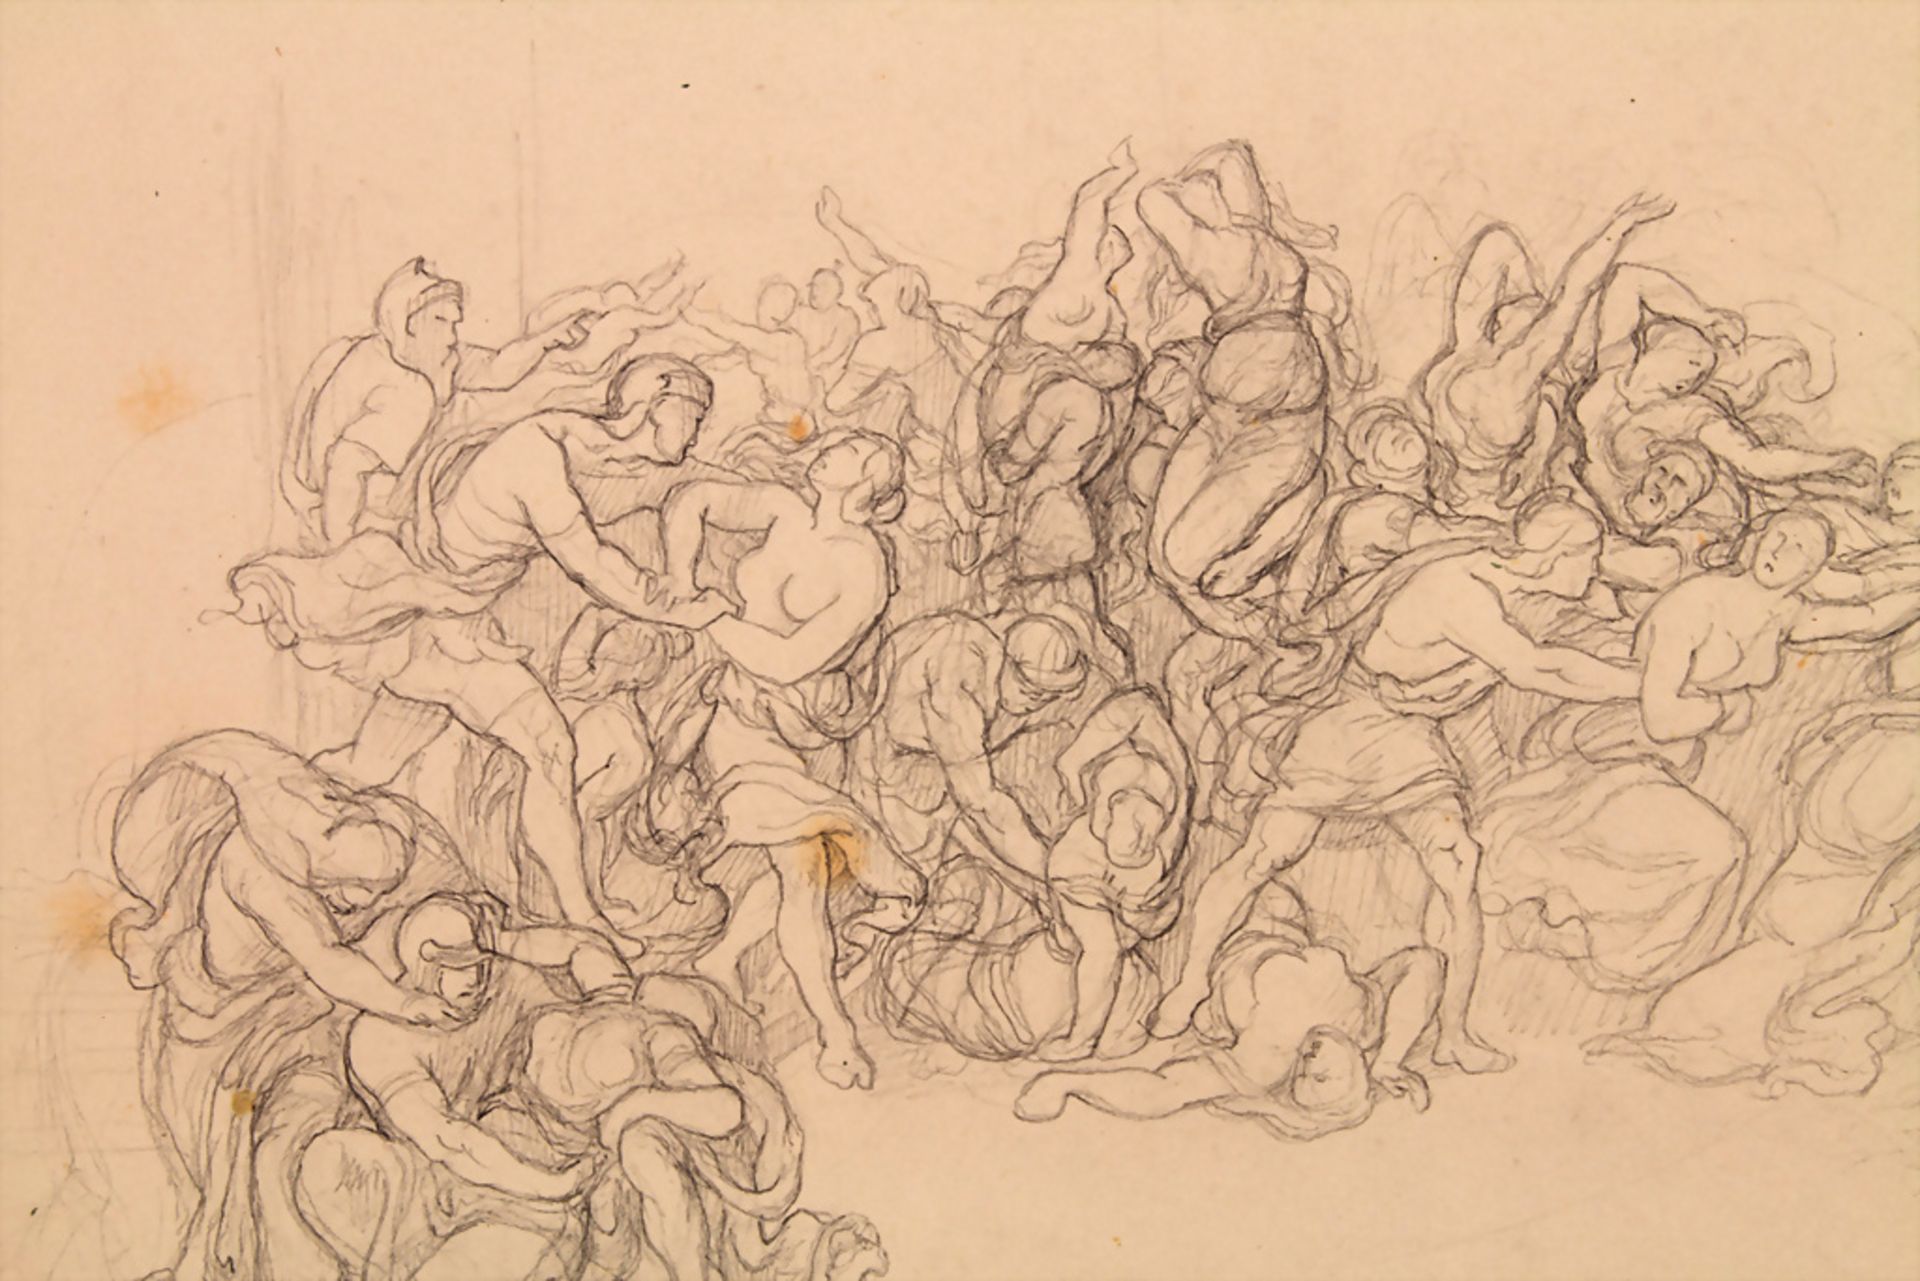 Carl Vornkeller (tätig um 1840), 'Der Raub der Sabinerinnen' / 'The rape of the Sabine women' - Image 2 of 4